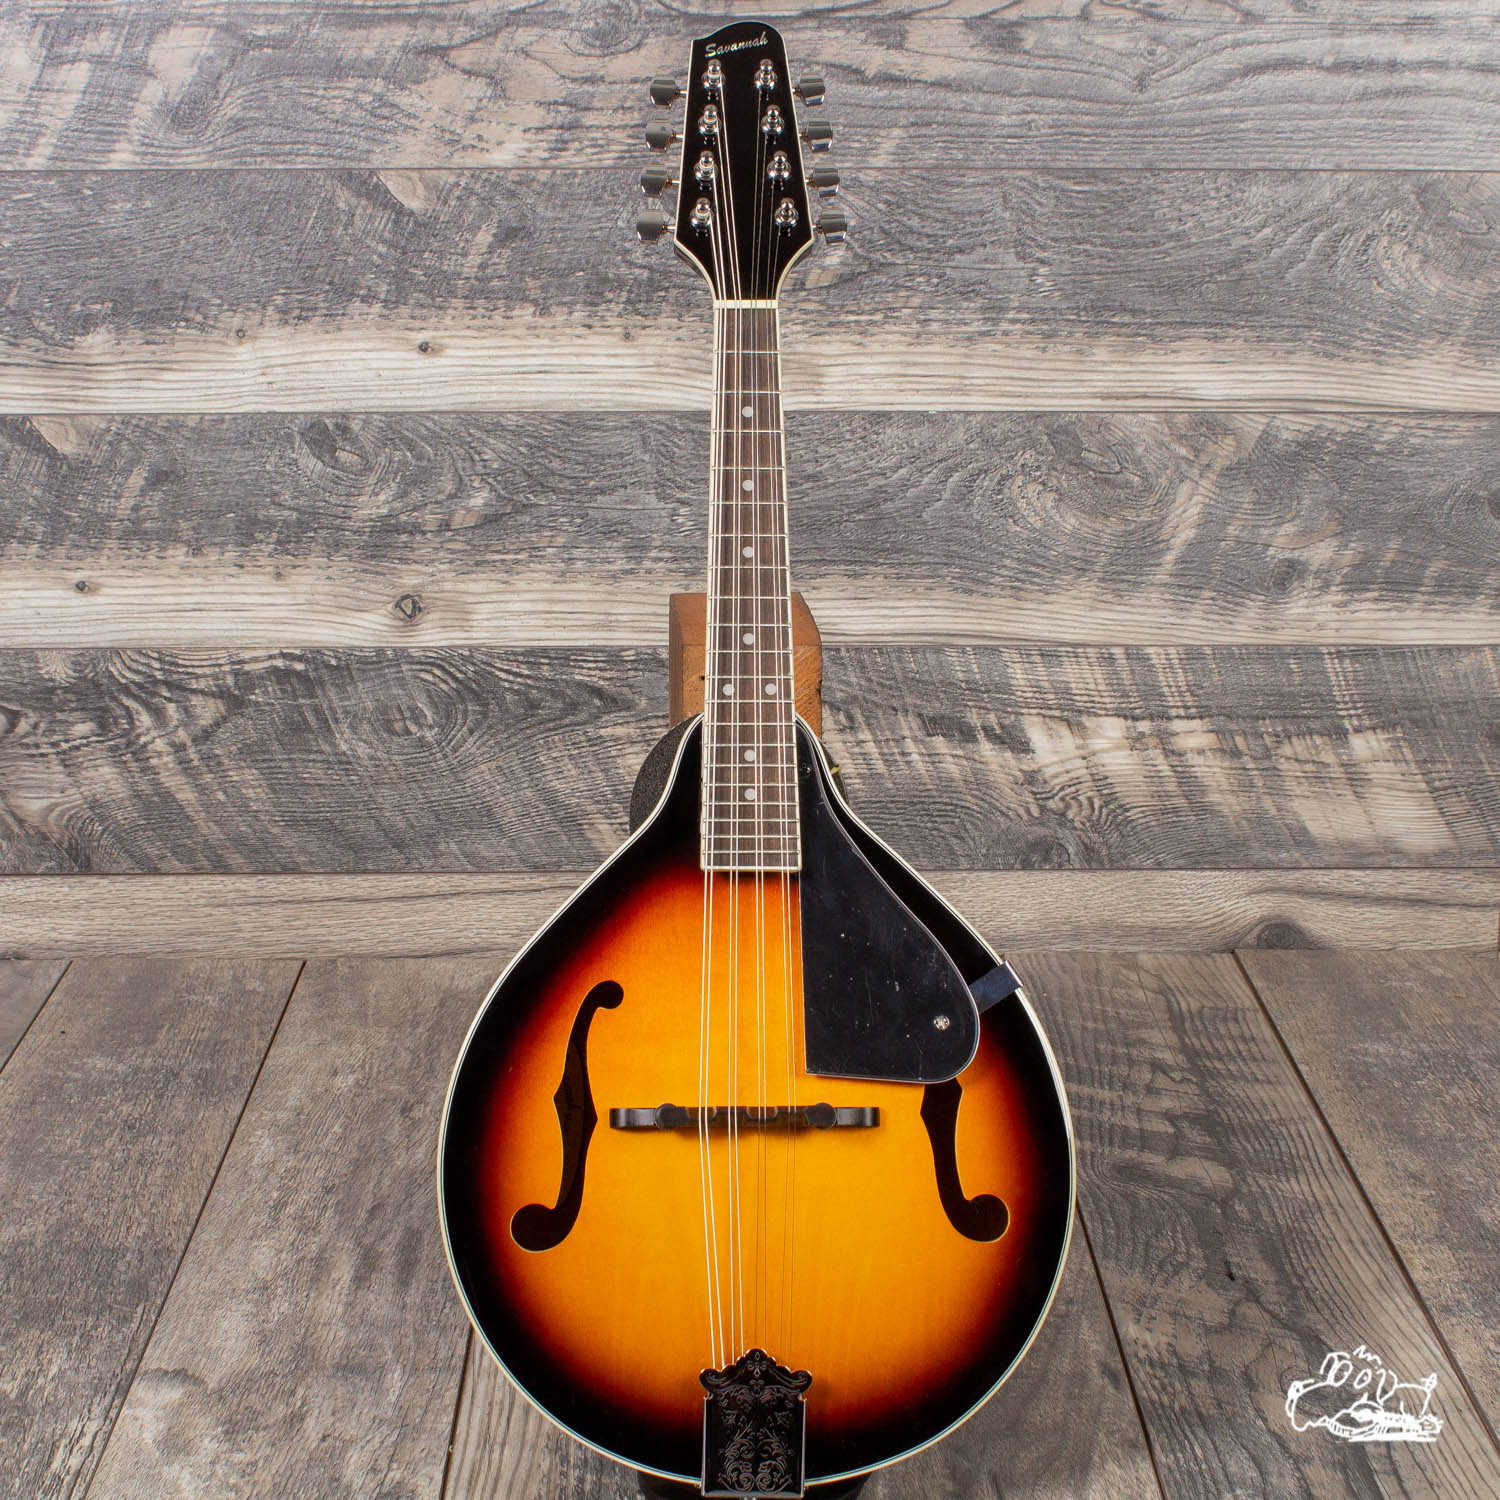 Park　SA-100　Savannah　–　Garrett　Mandolin　Sunburst　Guitars